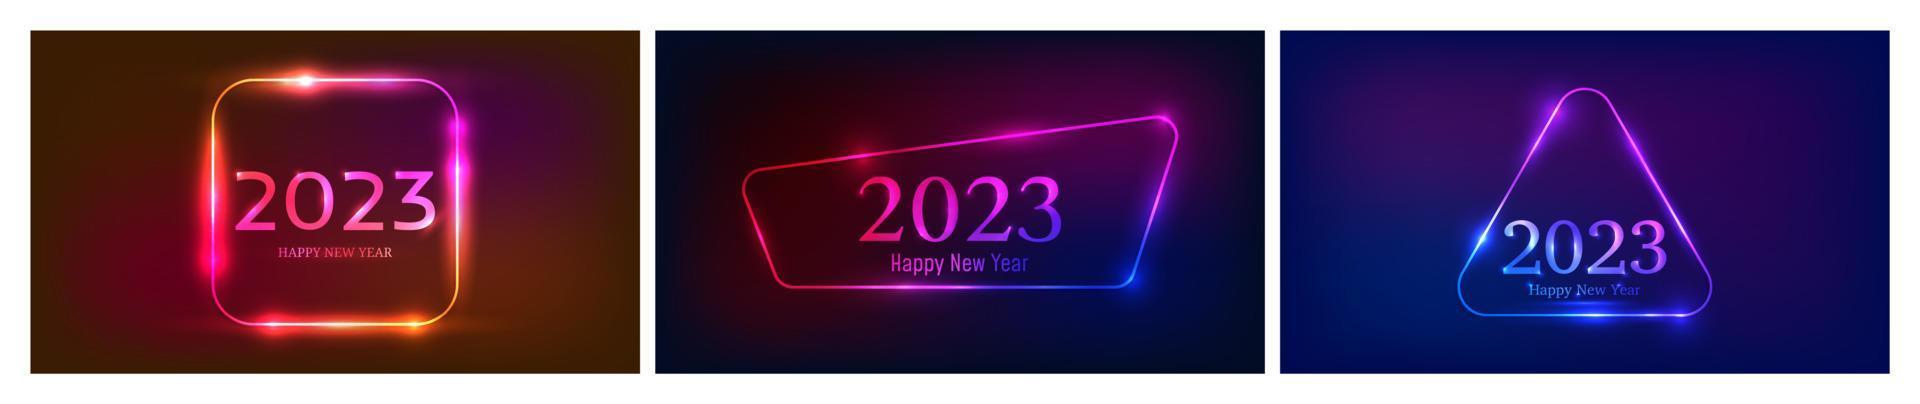 2023 Frohes neues Jahr Neonhintergrund vektor